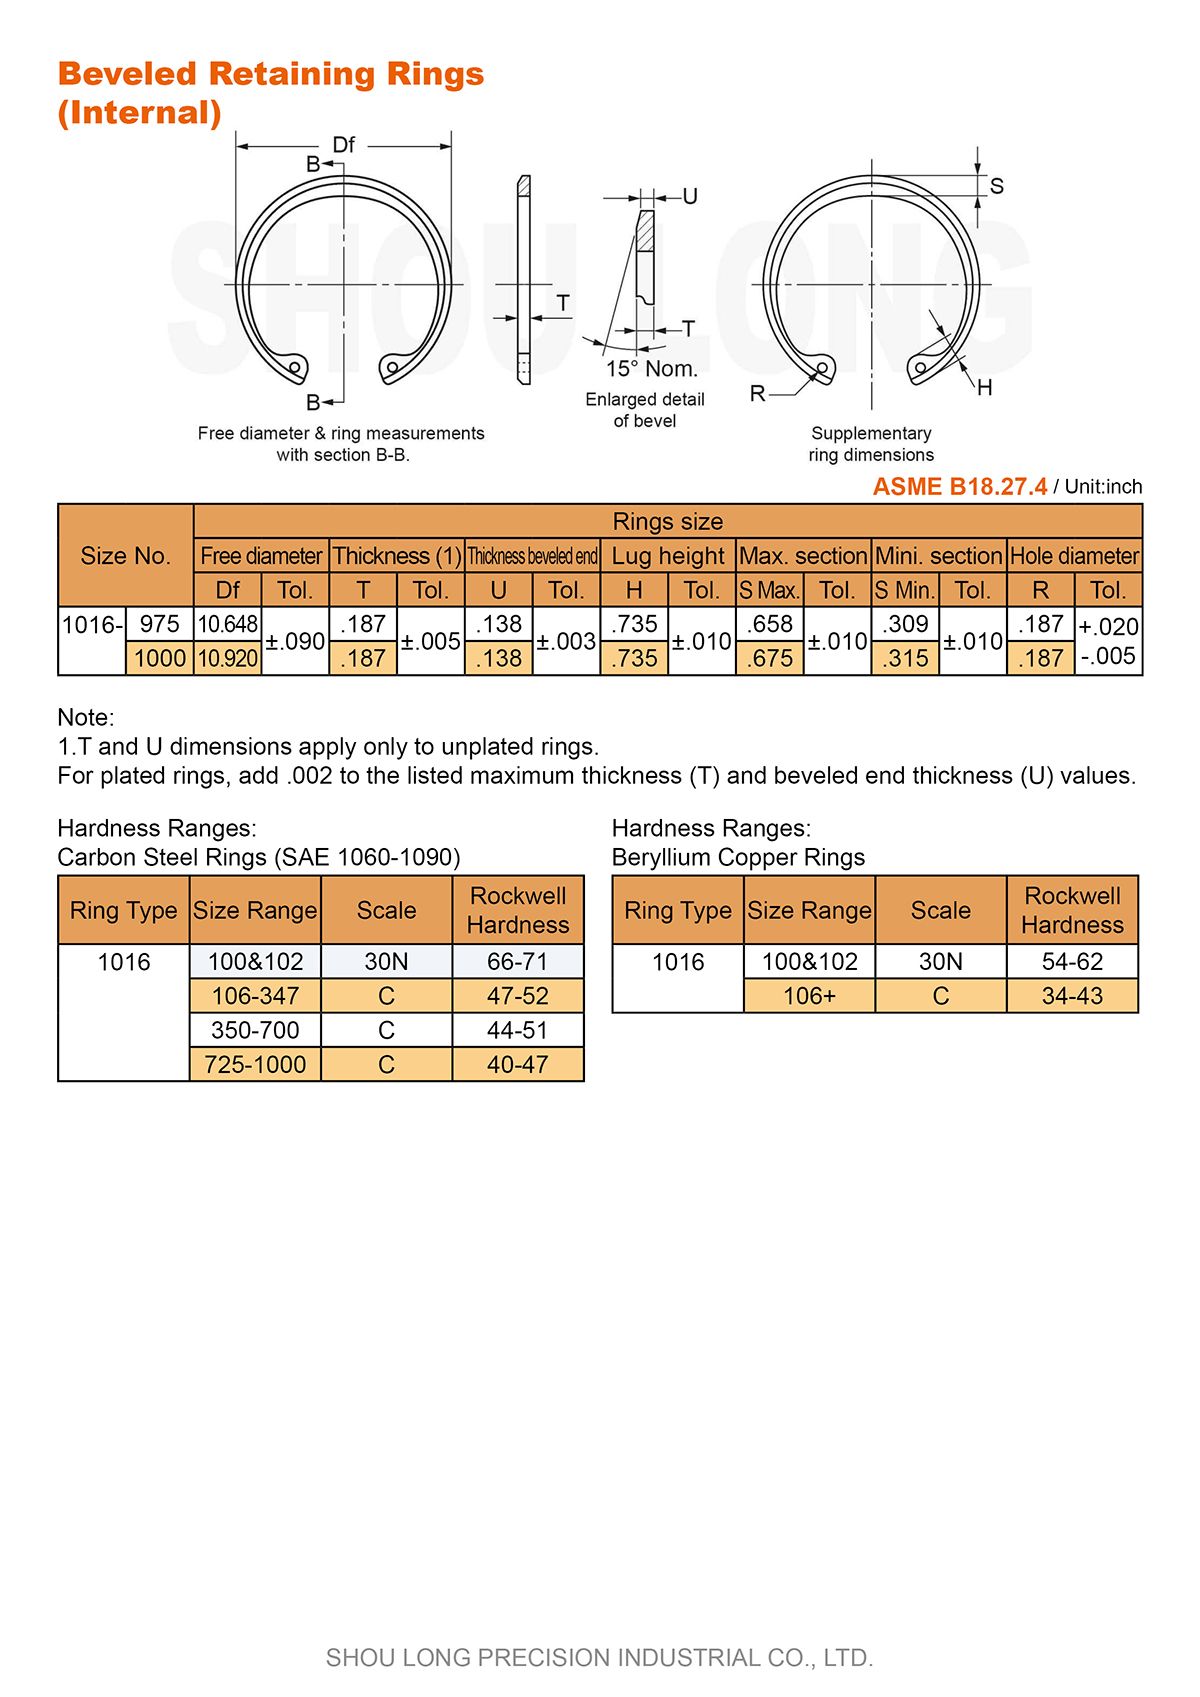 Spesifikasi Cincin Penahan Beveled Inch untuk Lubang ASME/ANSI B18.27.4-4